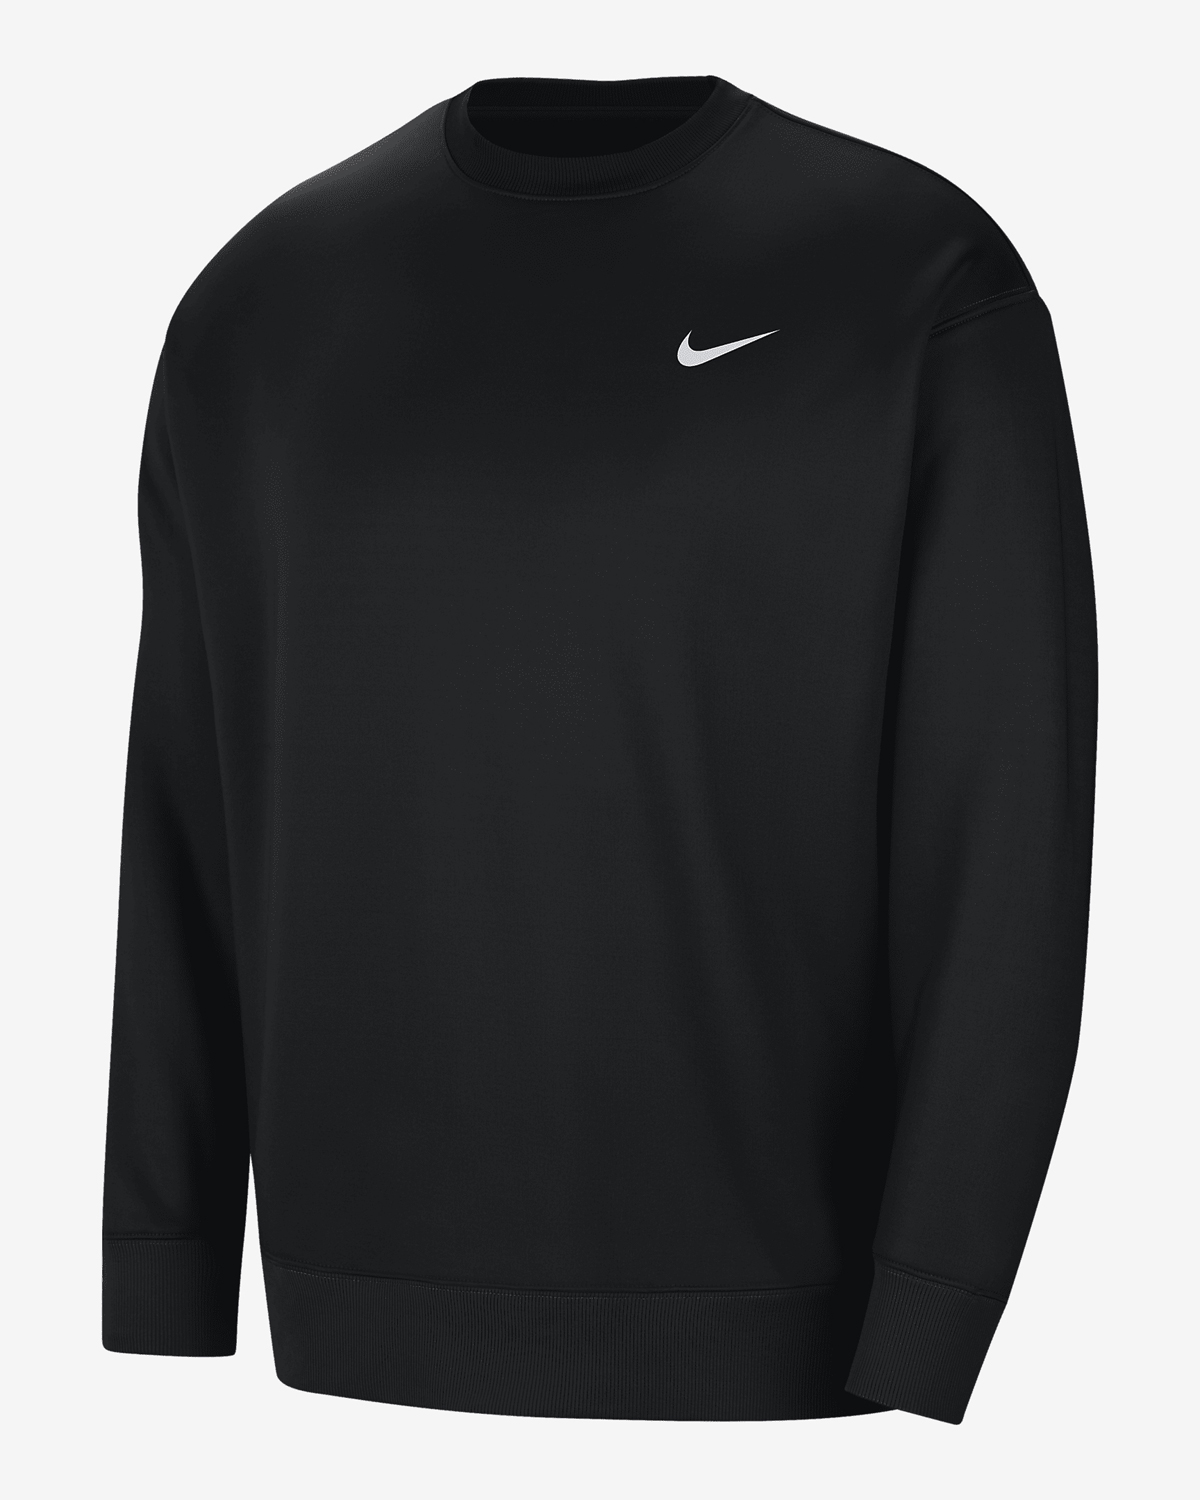 Nike-LeBron-FaZe-Clan-Fleece-Crew-Sweatshirt-1